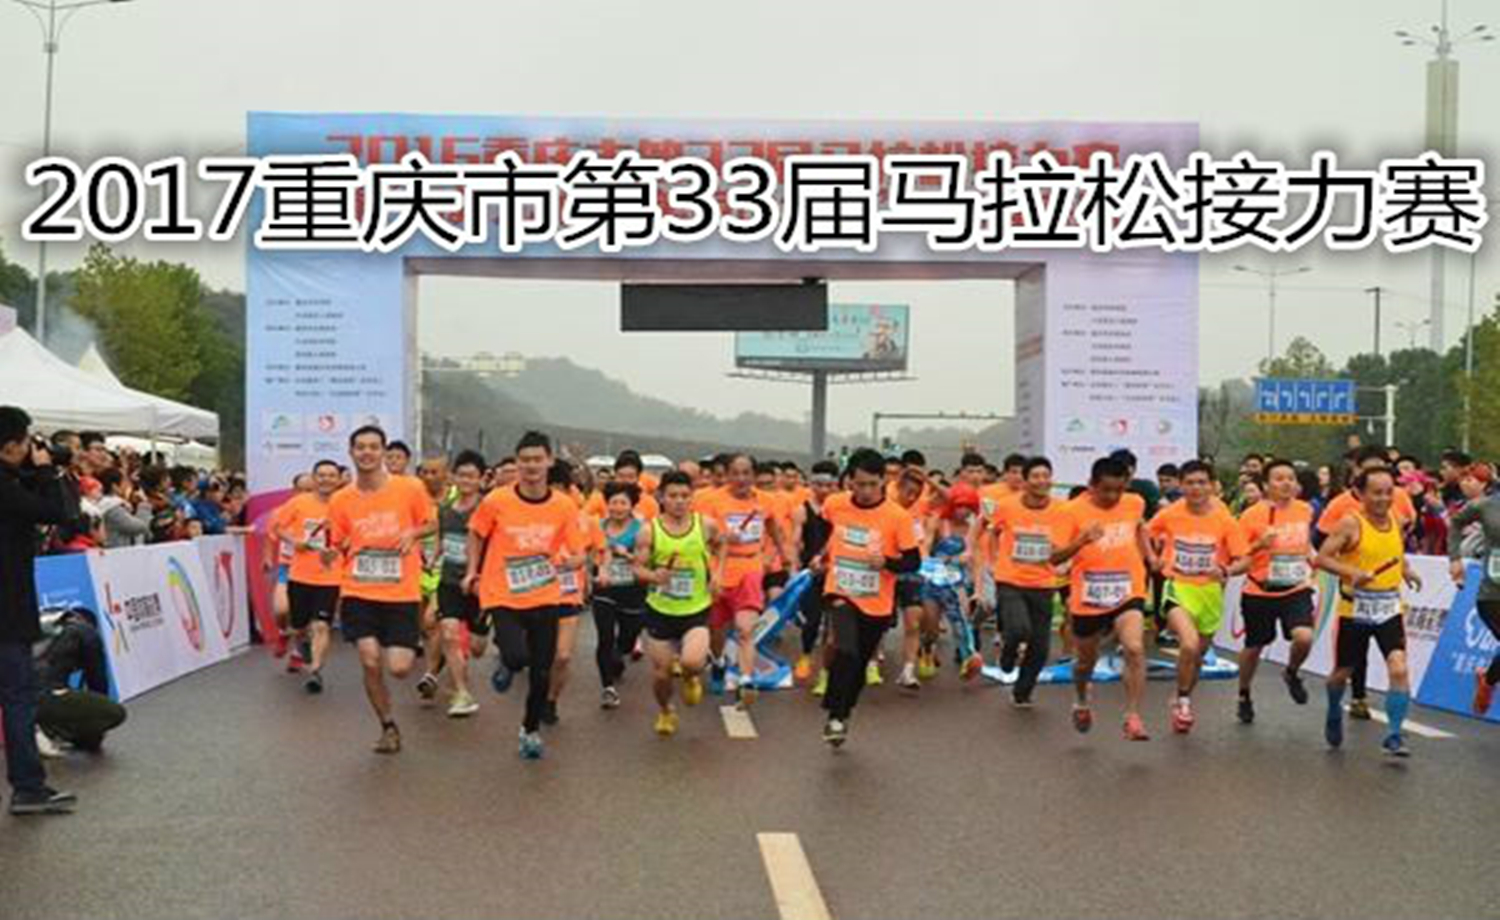 2017重庆市第33届马拉松接力赛